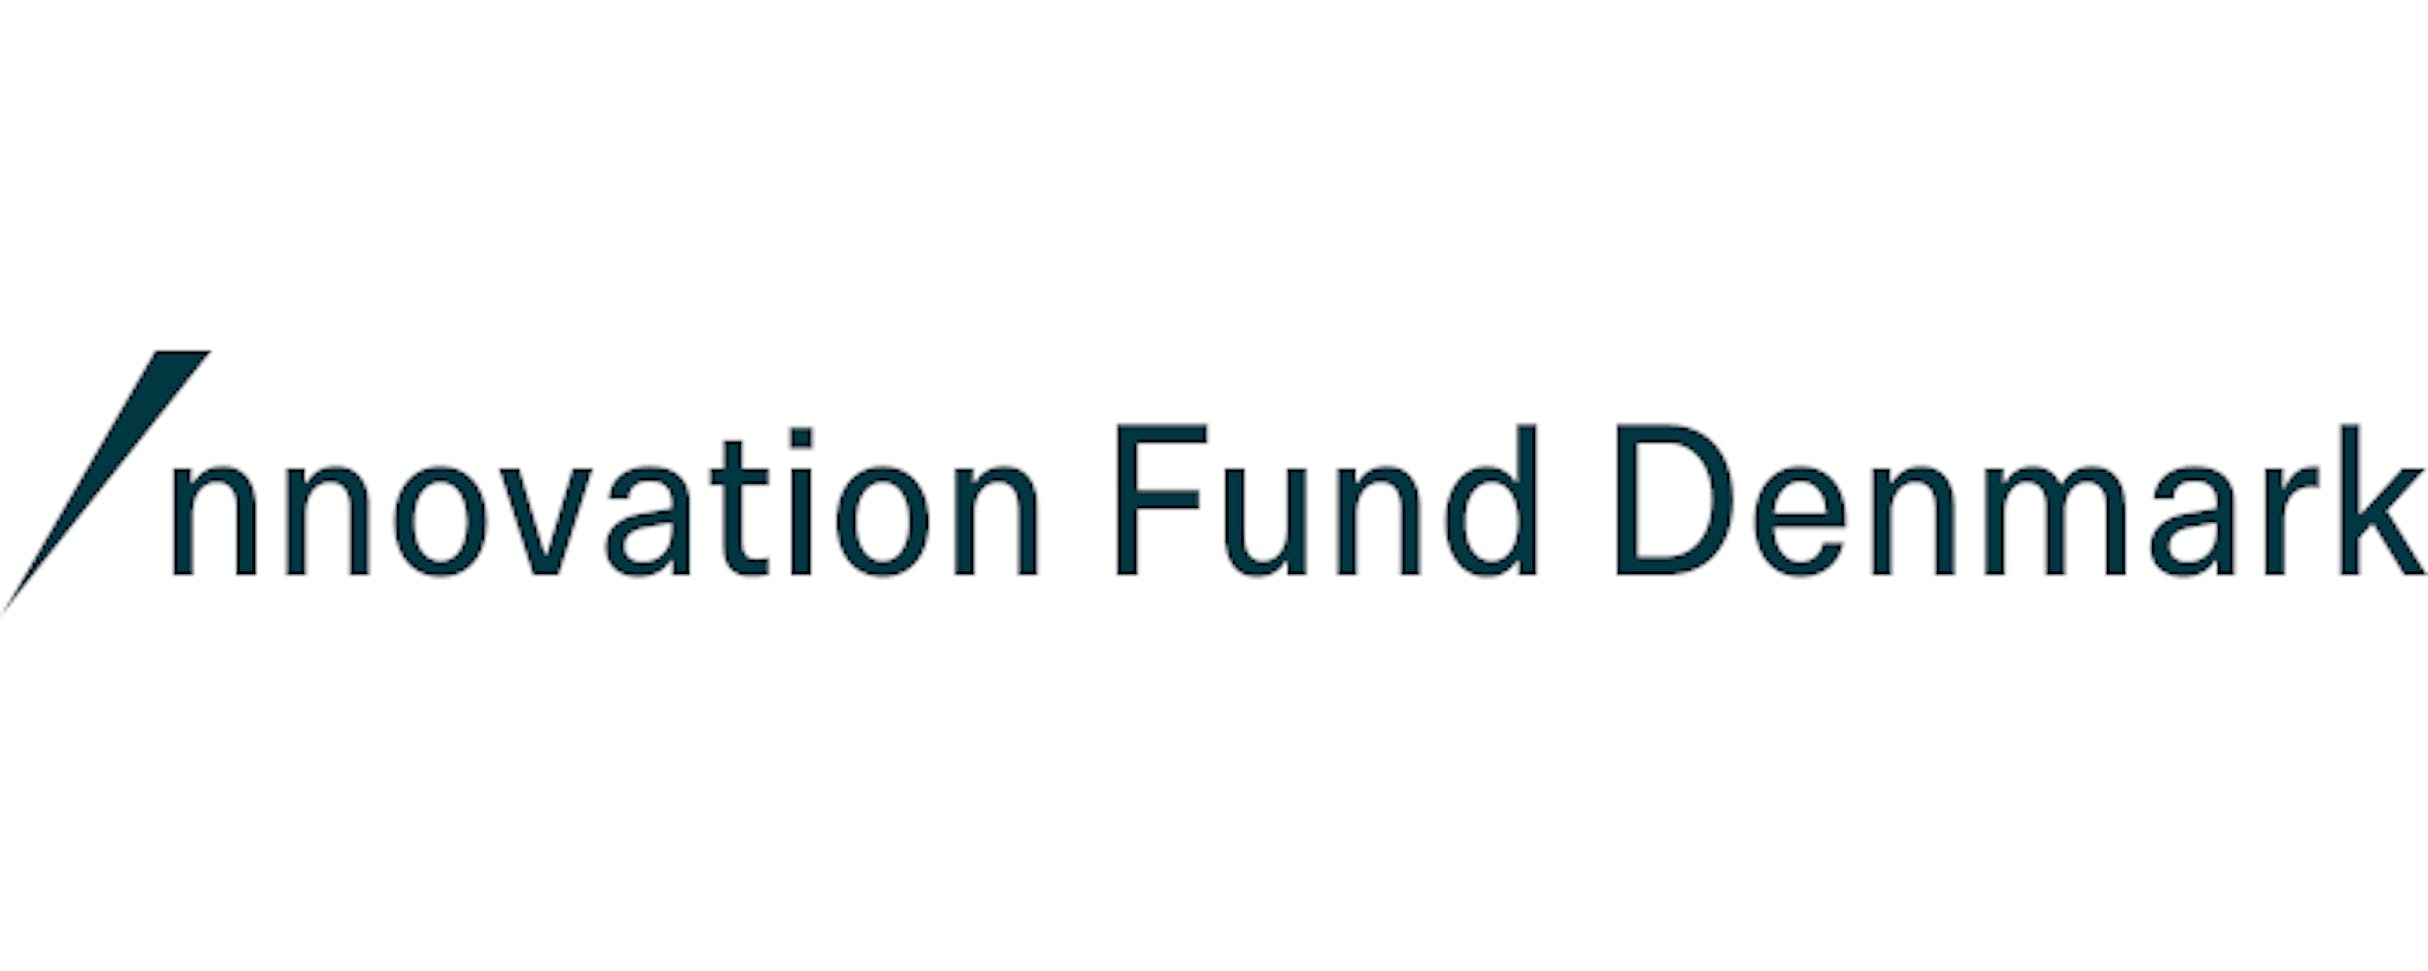 Innovation Fund Denmark logo 